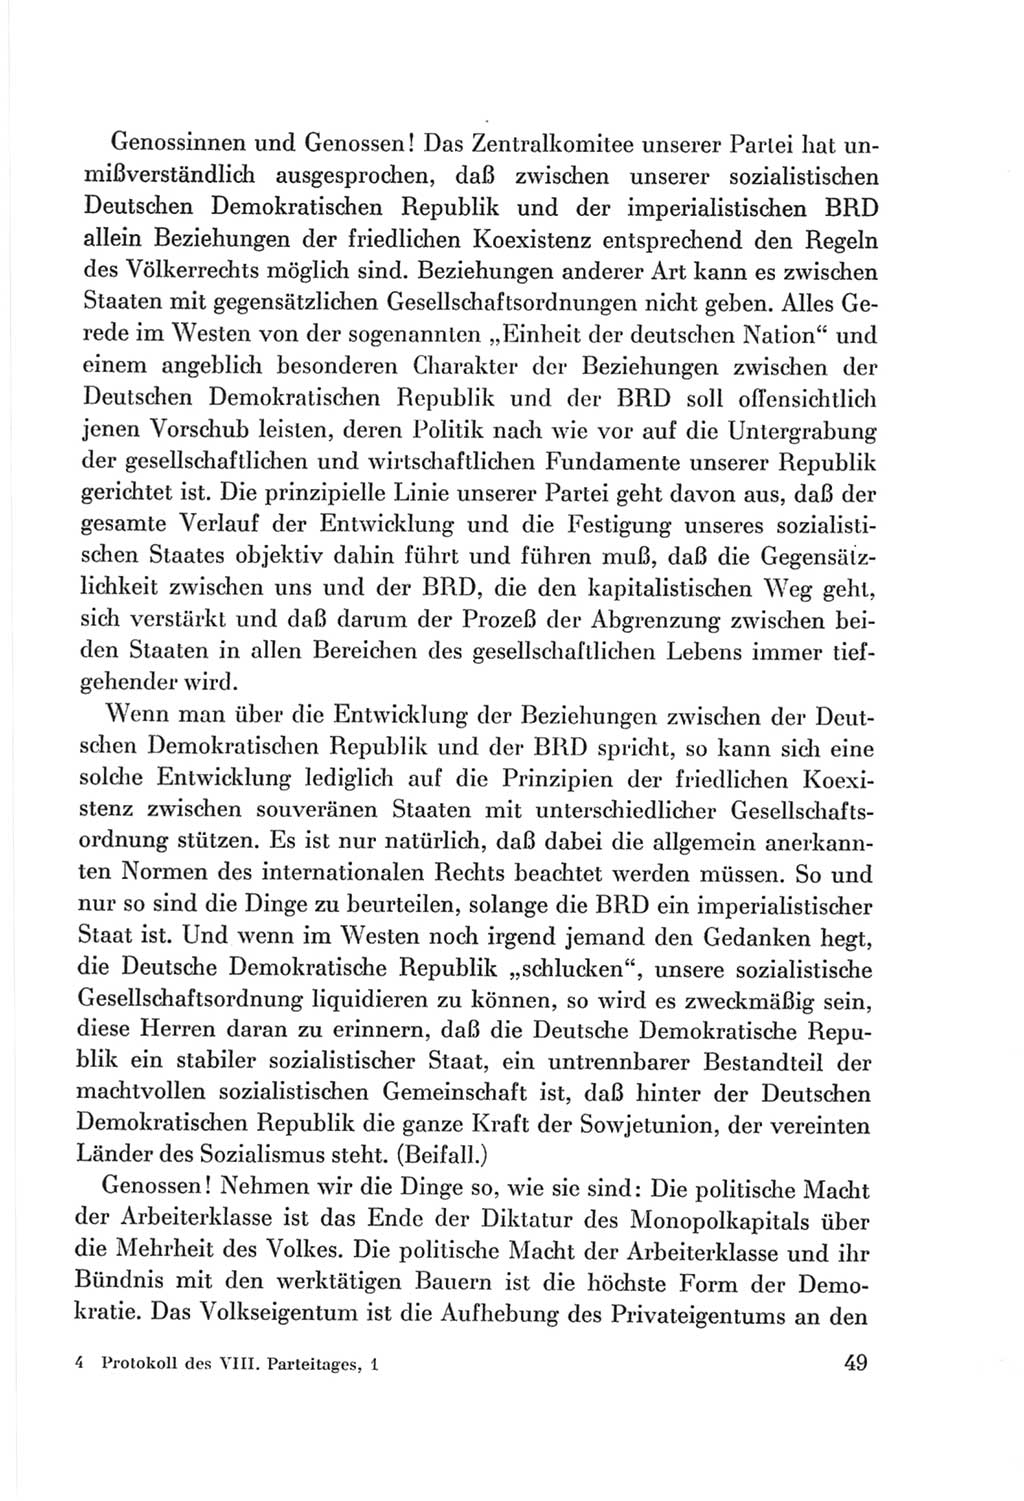 Protokoll der Verhandlungen des Ⅷ. Parteitages der Sozialistischen Einheitspartei Deutschlands (SED) [Deutsche Demokratische Republik (DDR)] 1971, Band 1, Seite 49 (Prot. Verh. Ⅷ. PT SED DDR 1971, Bd. 1, S. 49)